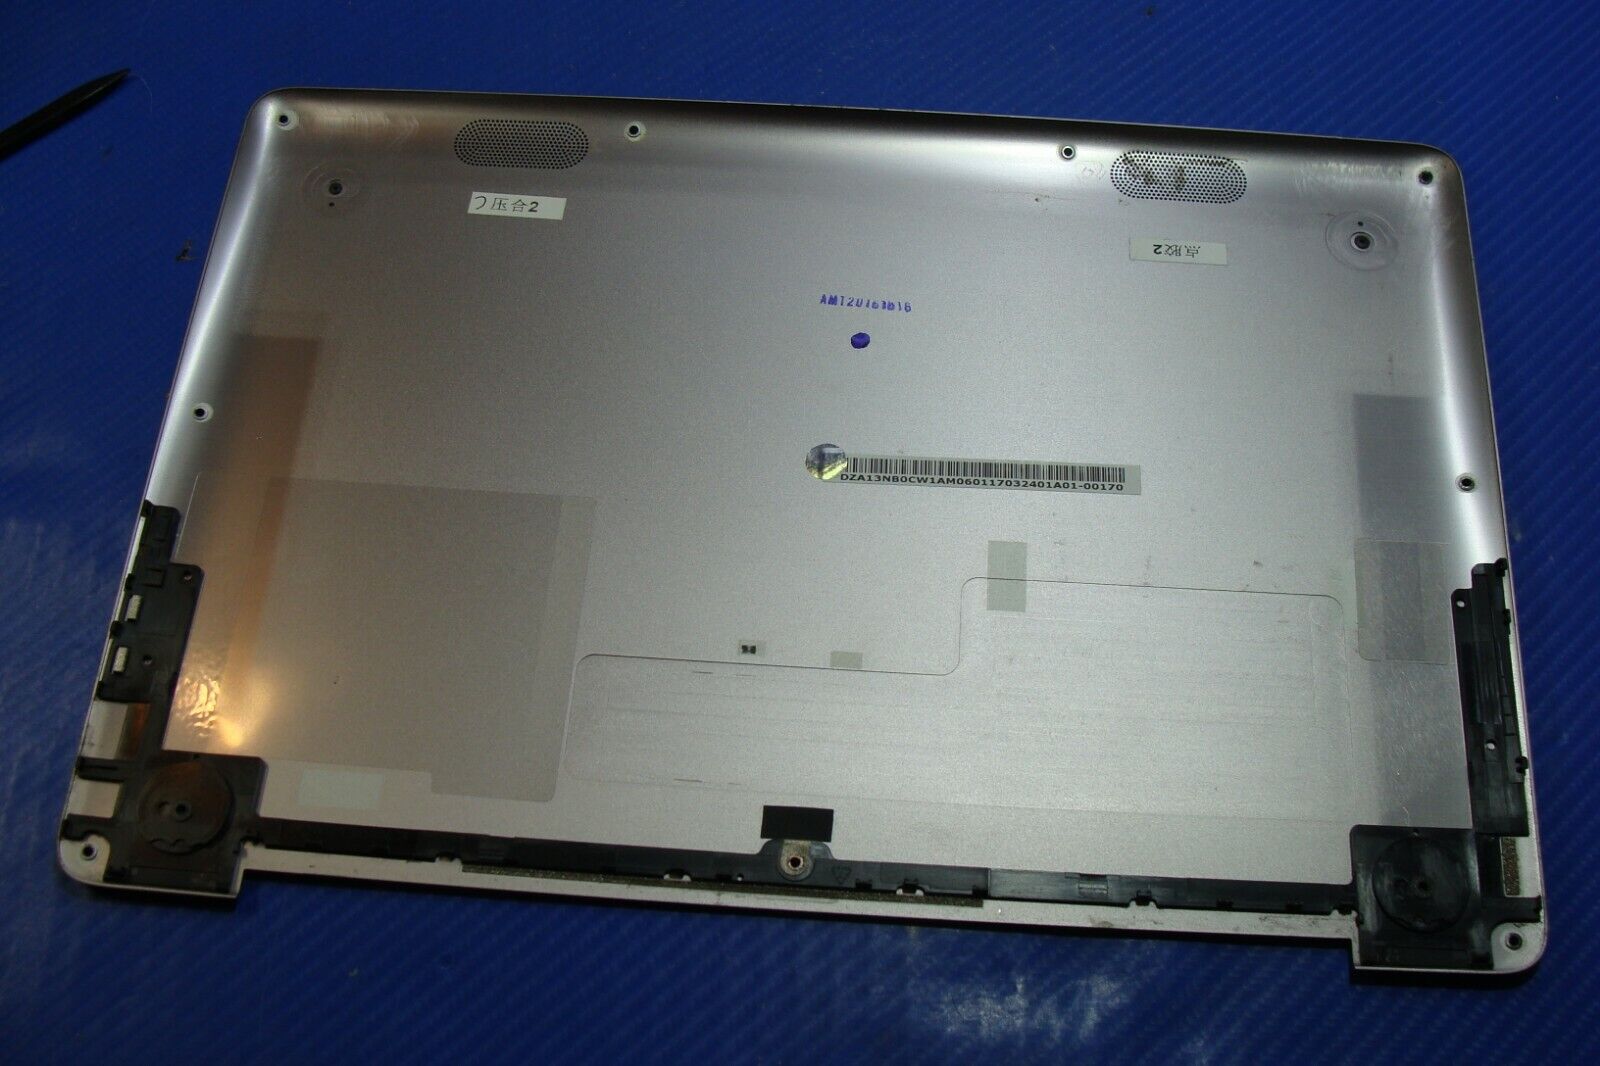 Asus Zenbook UX330U 13.3